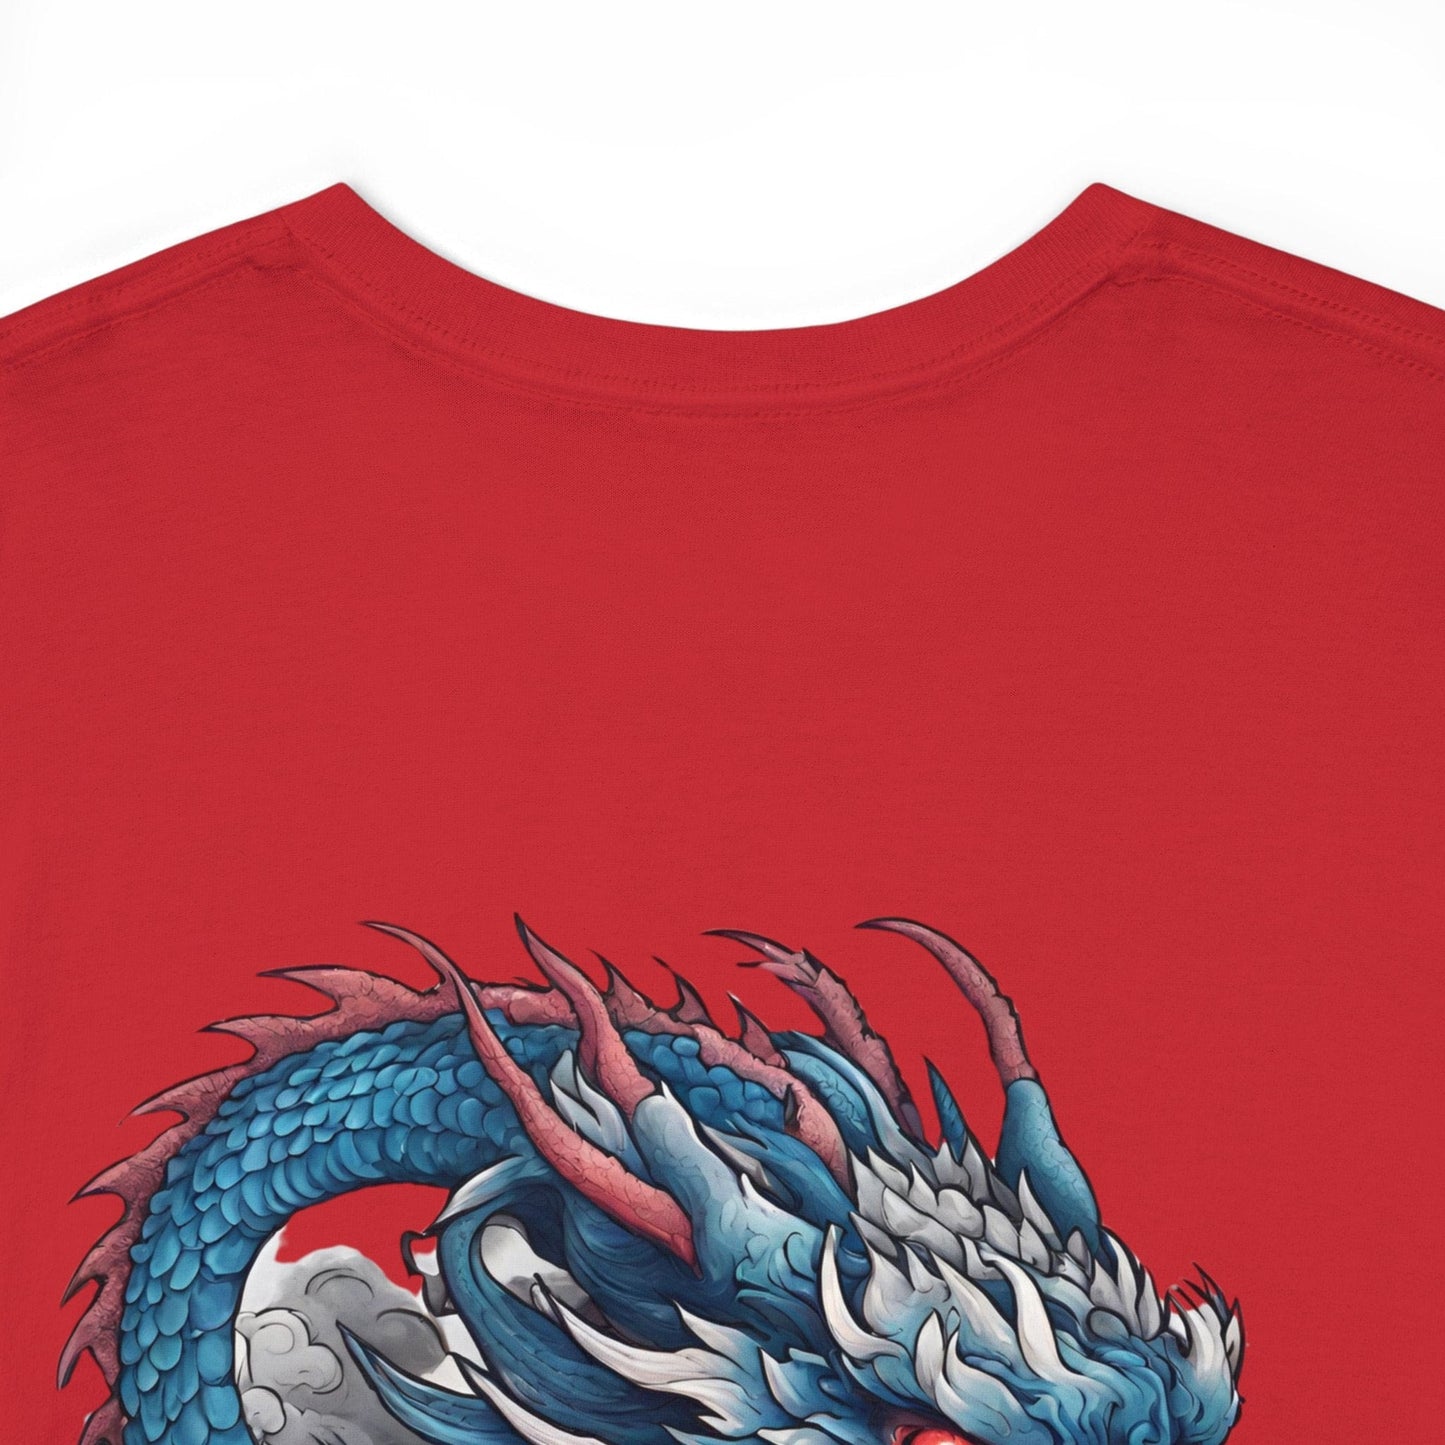 Flashlander Blue Dragon Streetwear Tee Camiseta gráfica japonesa